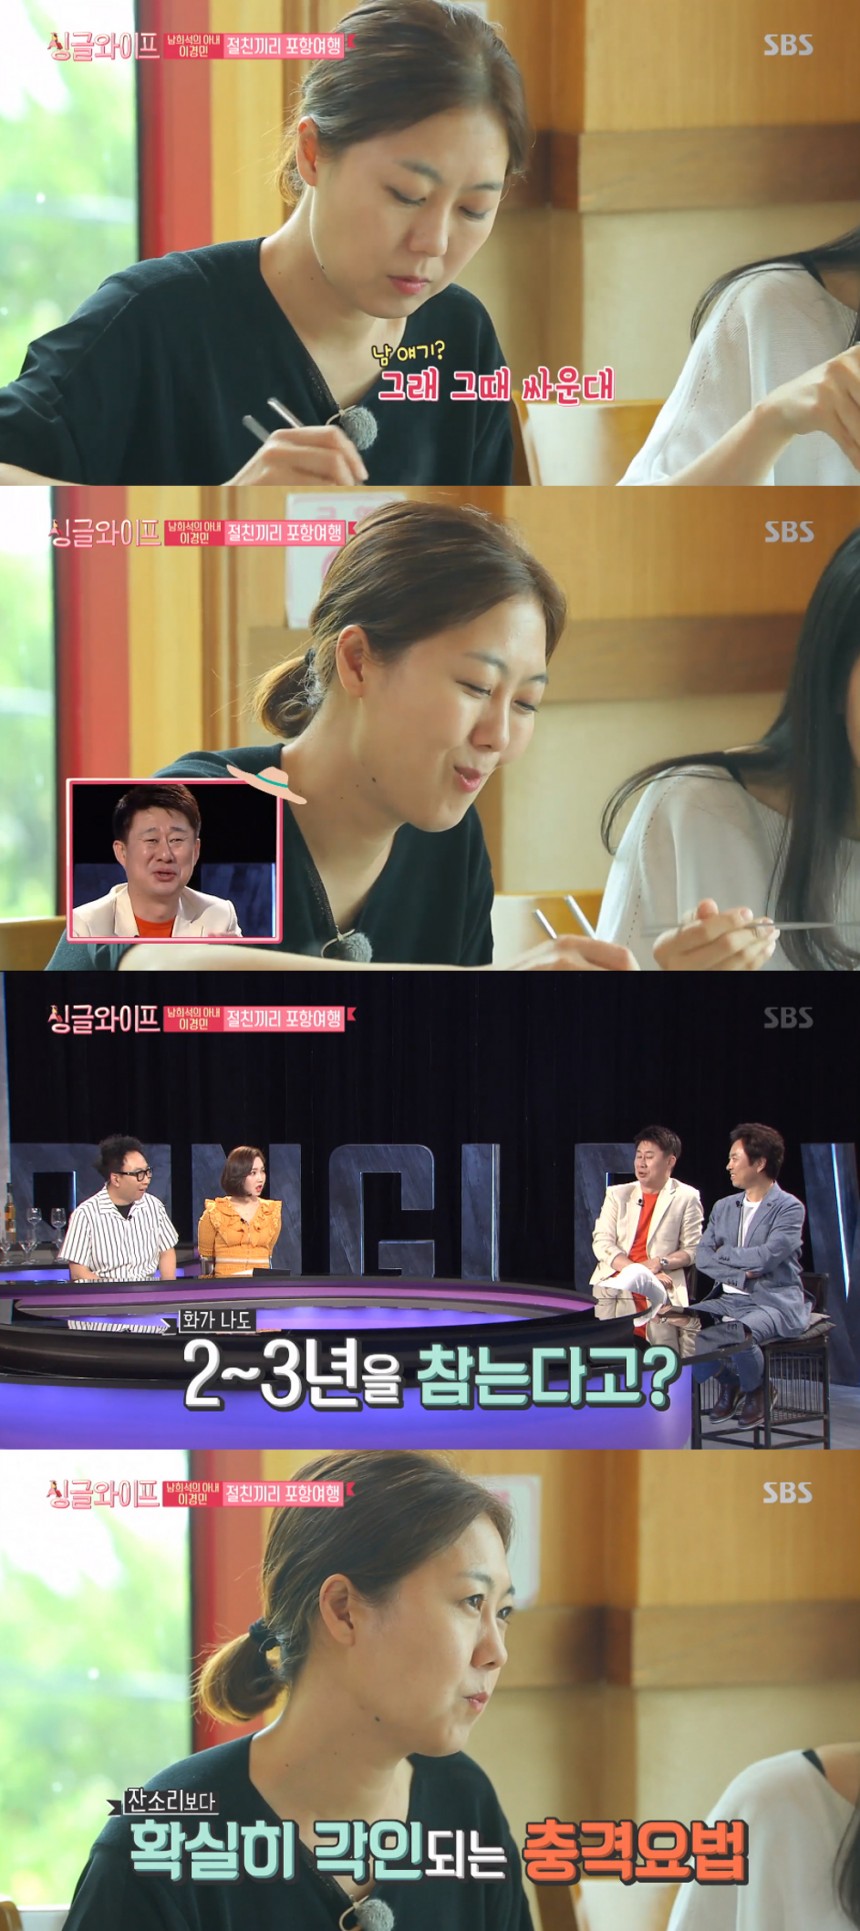 SBS 파일럿 예능 ‘싱글 와이프’ 방송화면 캡처